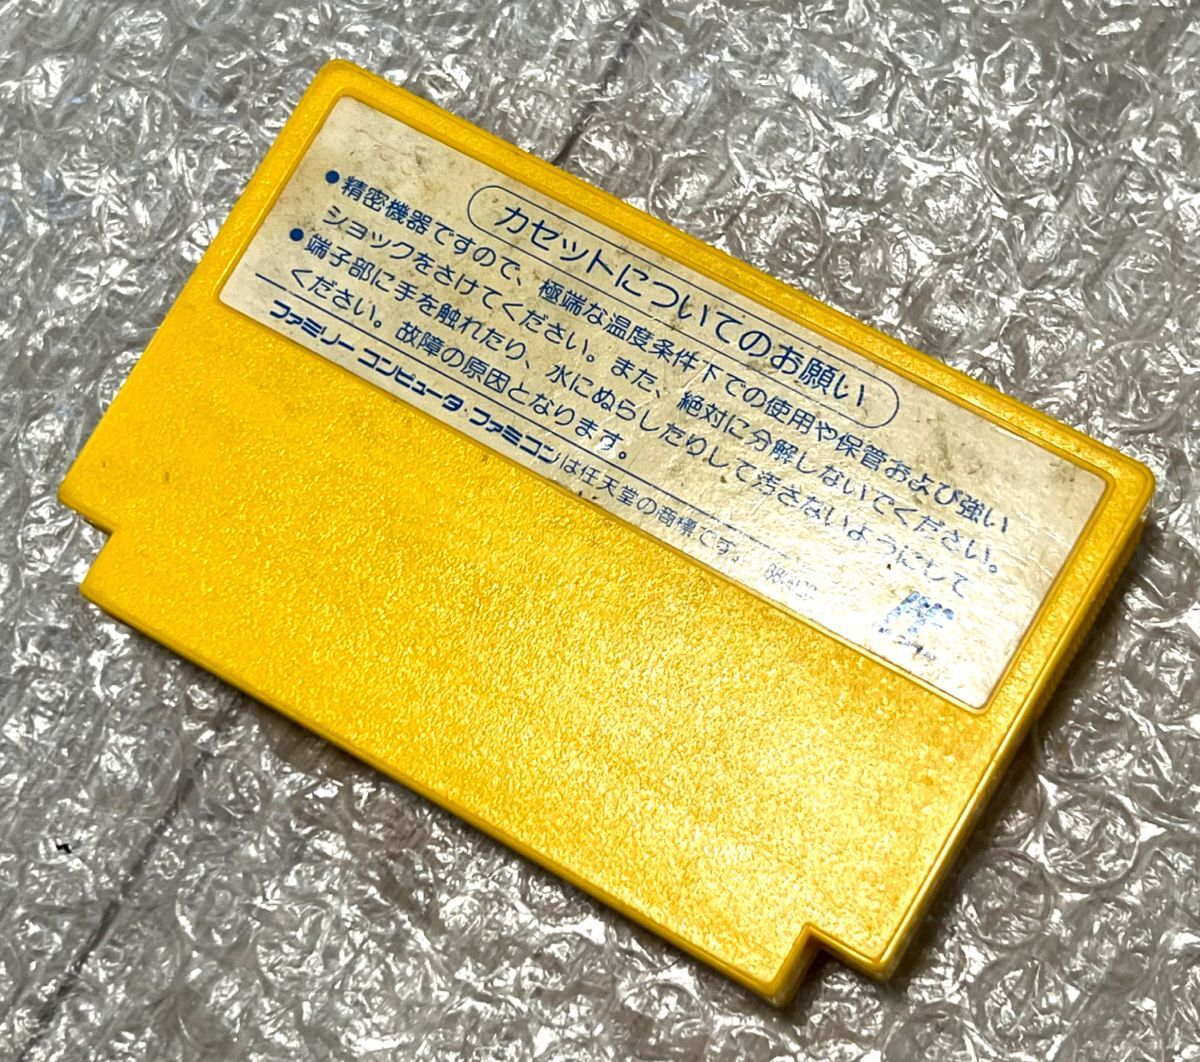 ( техническое обслуживание * рабочее состояние подтверждено )FC Famicom Cat's ........TECMO Family компьютер NES